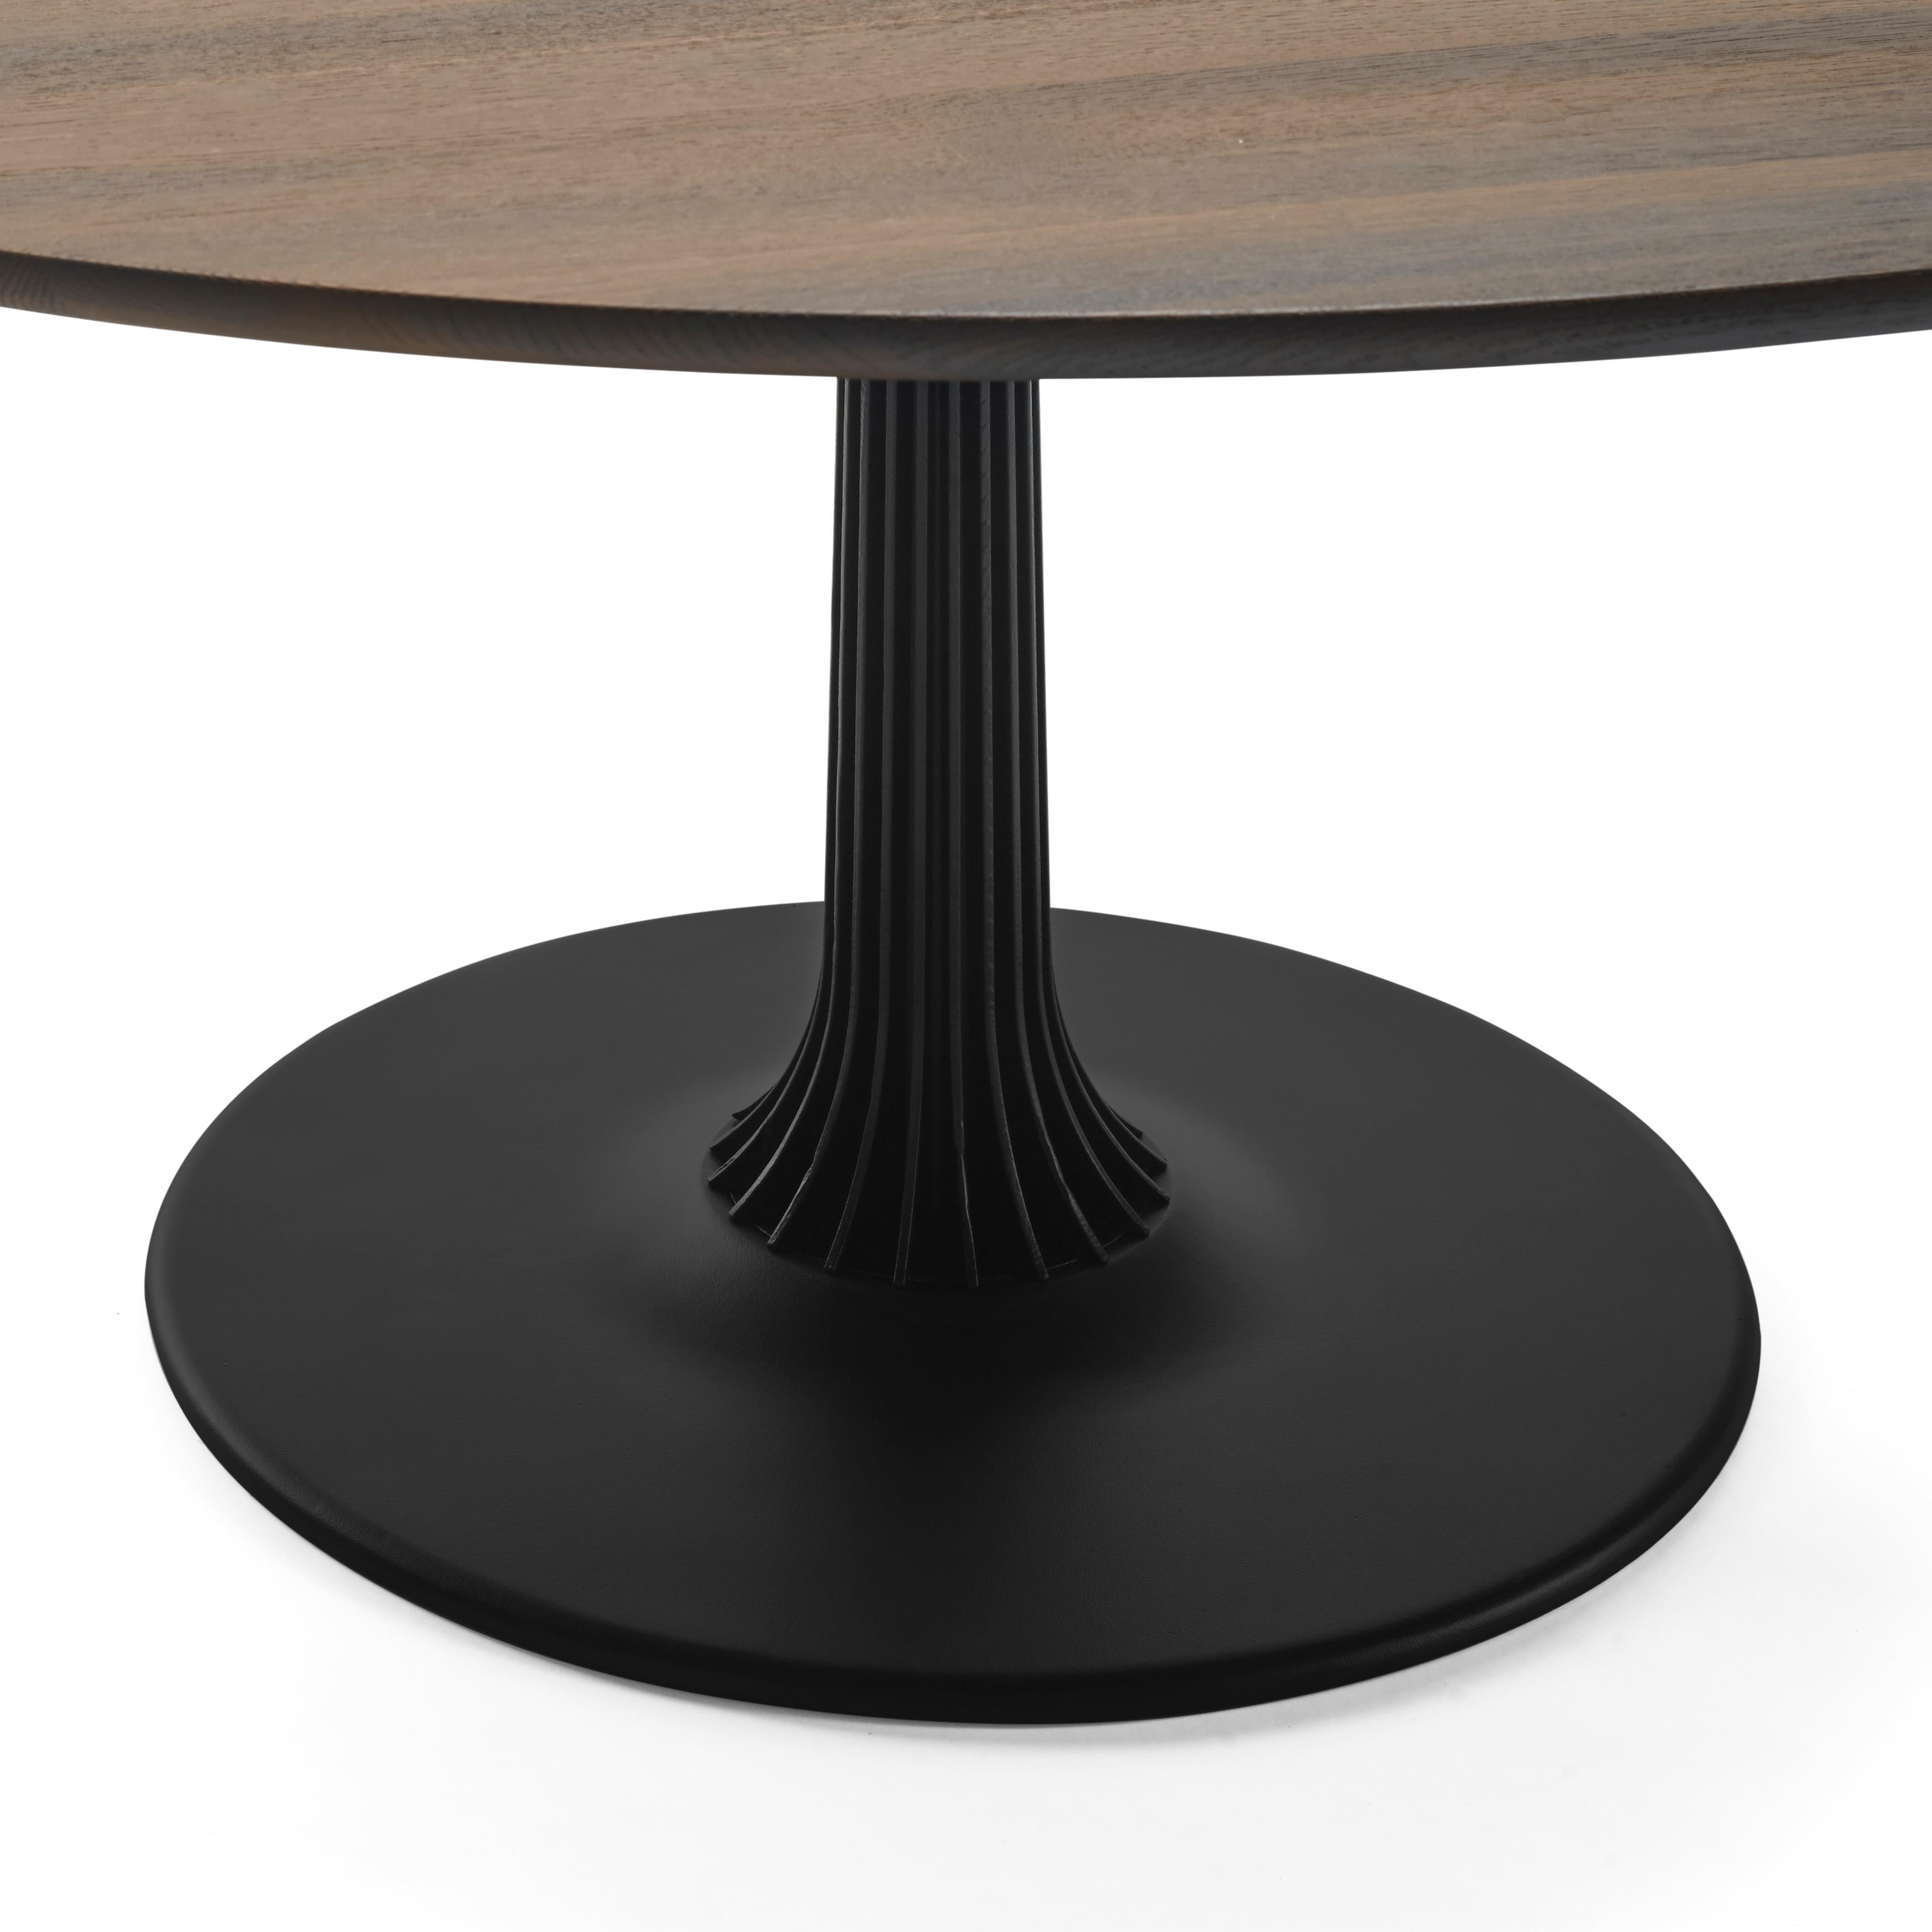 Der Joist-Tisch / Esszimmertisch ist aufgrund seiner runden Form ein echter Archetyp. Die zentrale Stützsäule bietet viel Bein- und Bewegungsfreiheit. Die runde Form macht Joist zu einem Tisch für geselliges Beisammensein: Jeder kann jeden sehen.